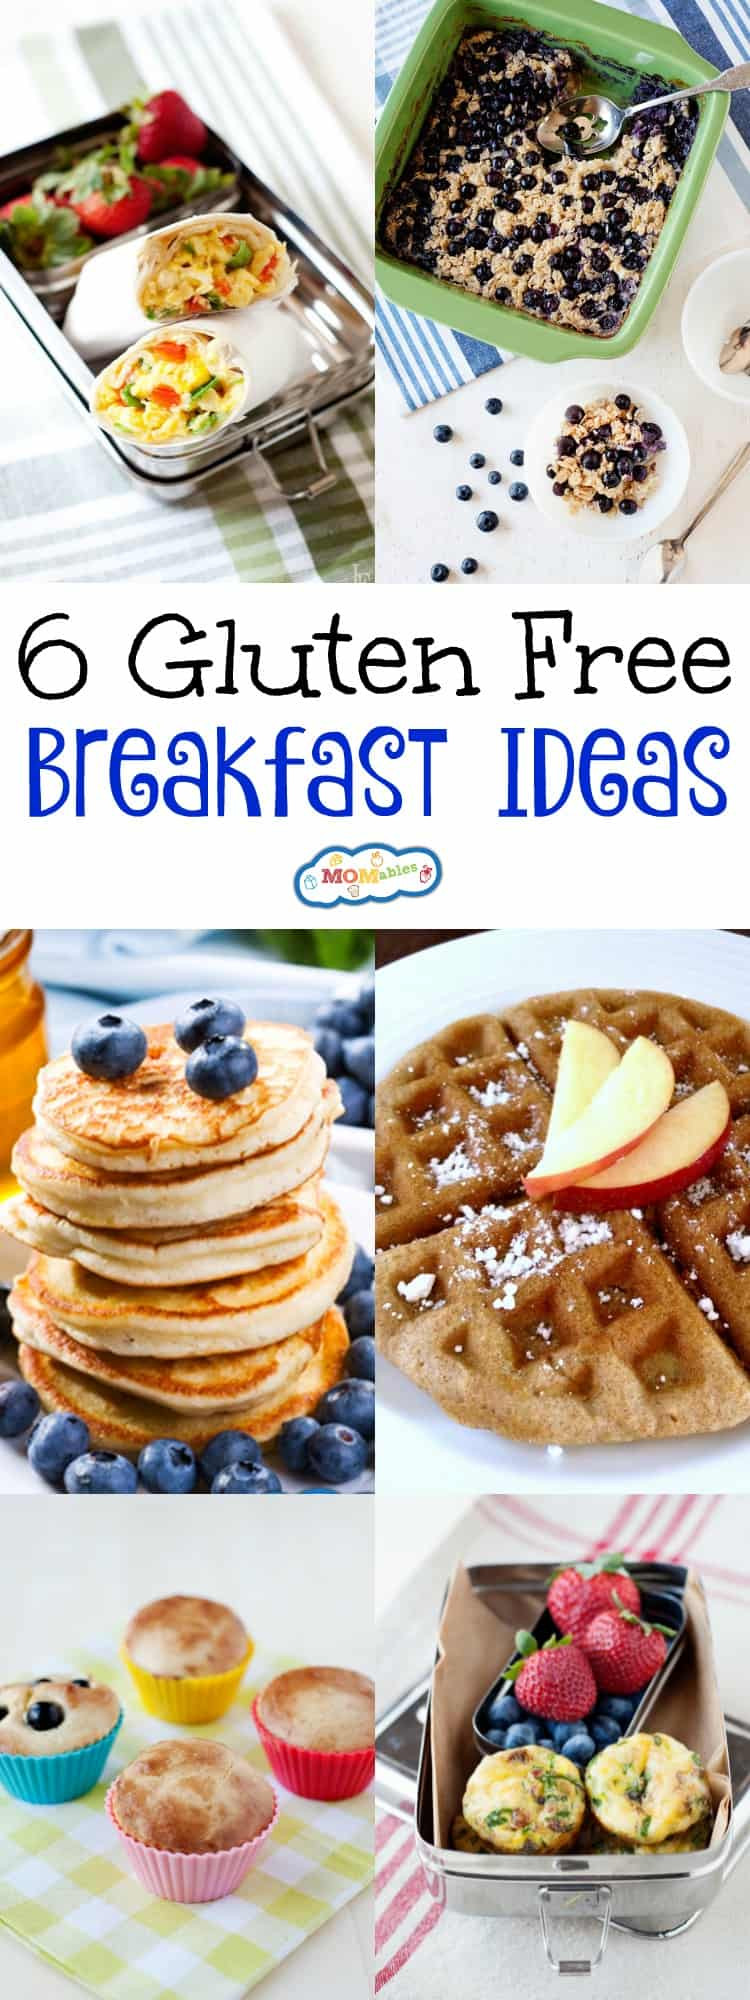 Healthy Dairy Free Breakfast
 6 Gluten Free Breakfast Ideas MOMables